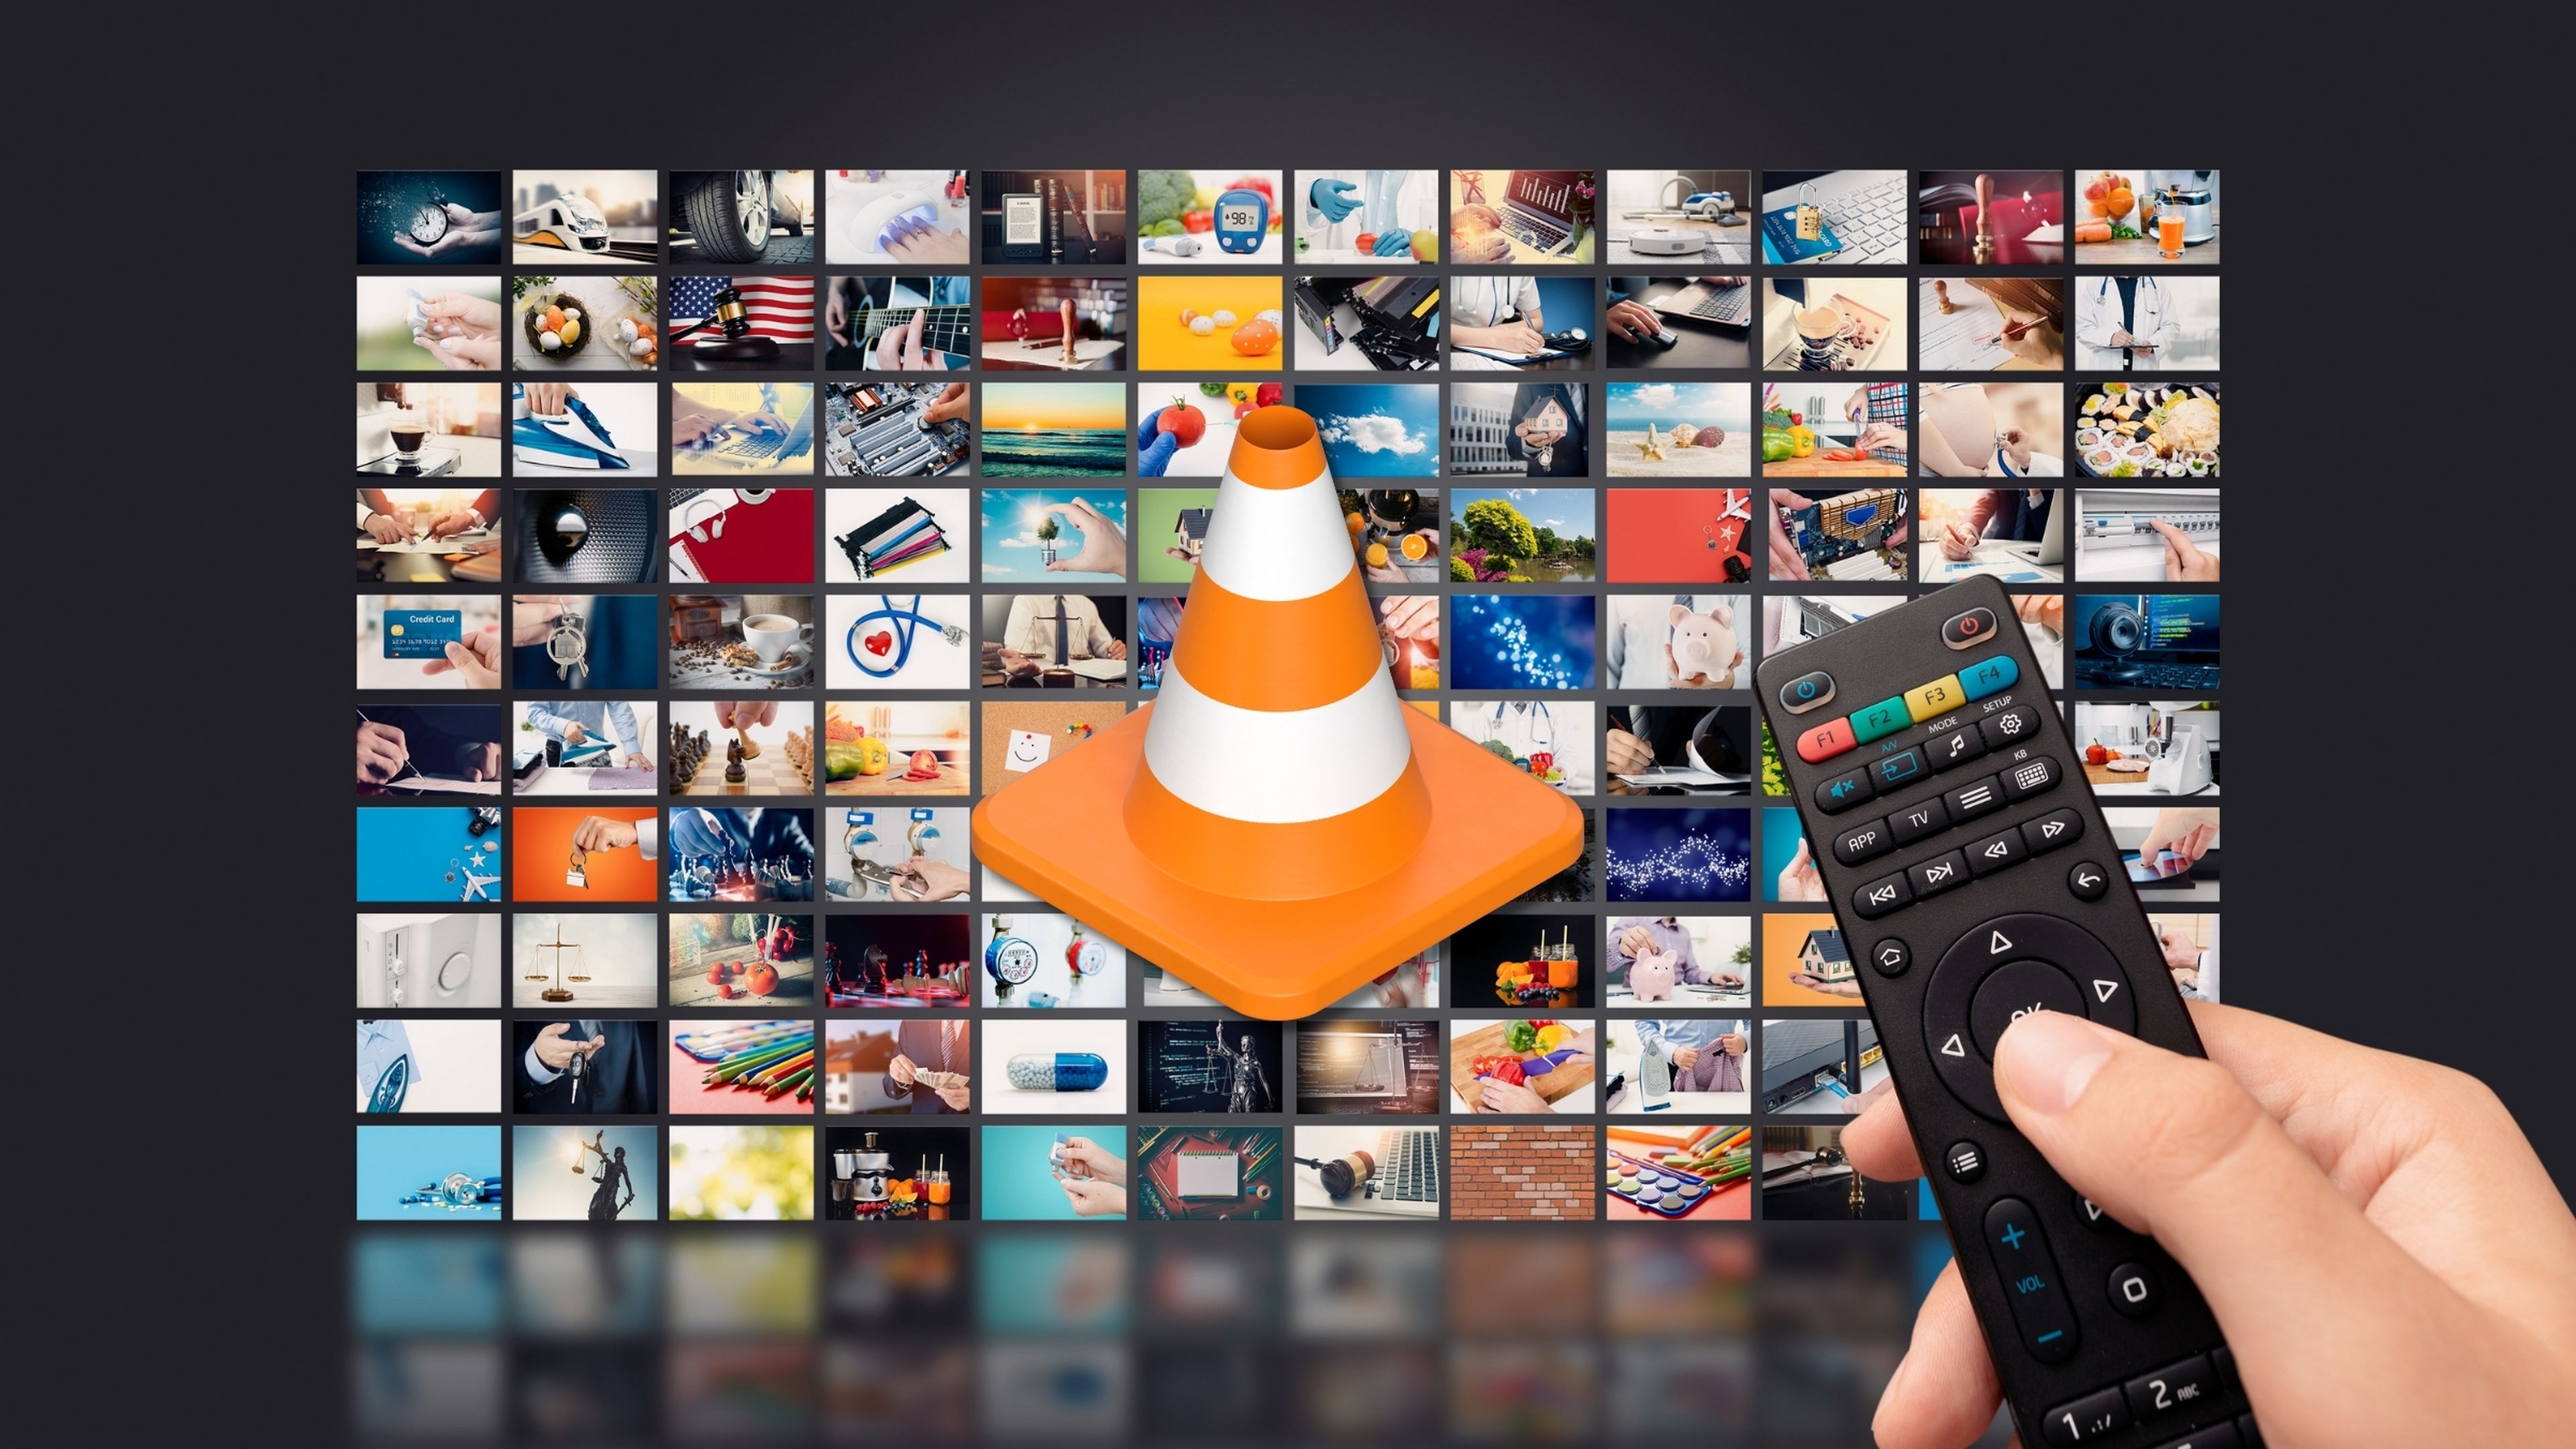 Cómo ver la TV gratis con VLC por IPTV y grabar tus series y películas favoritas